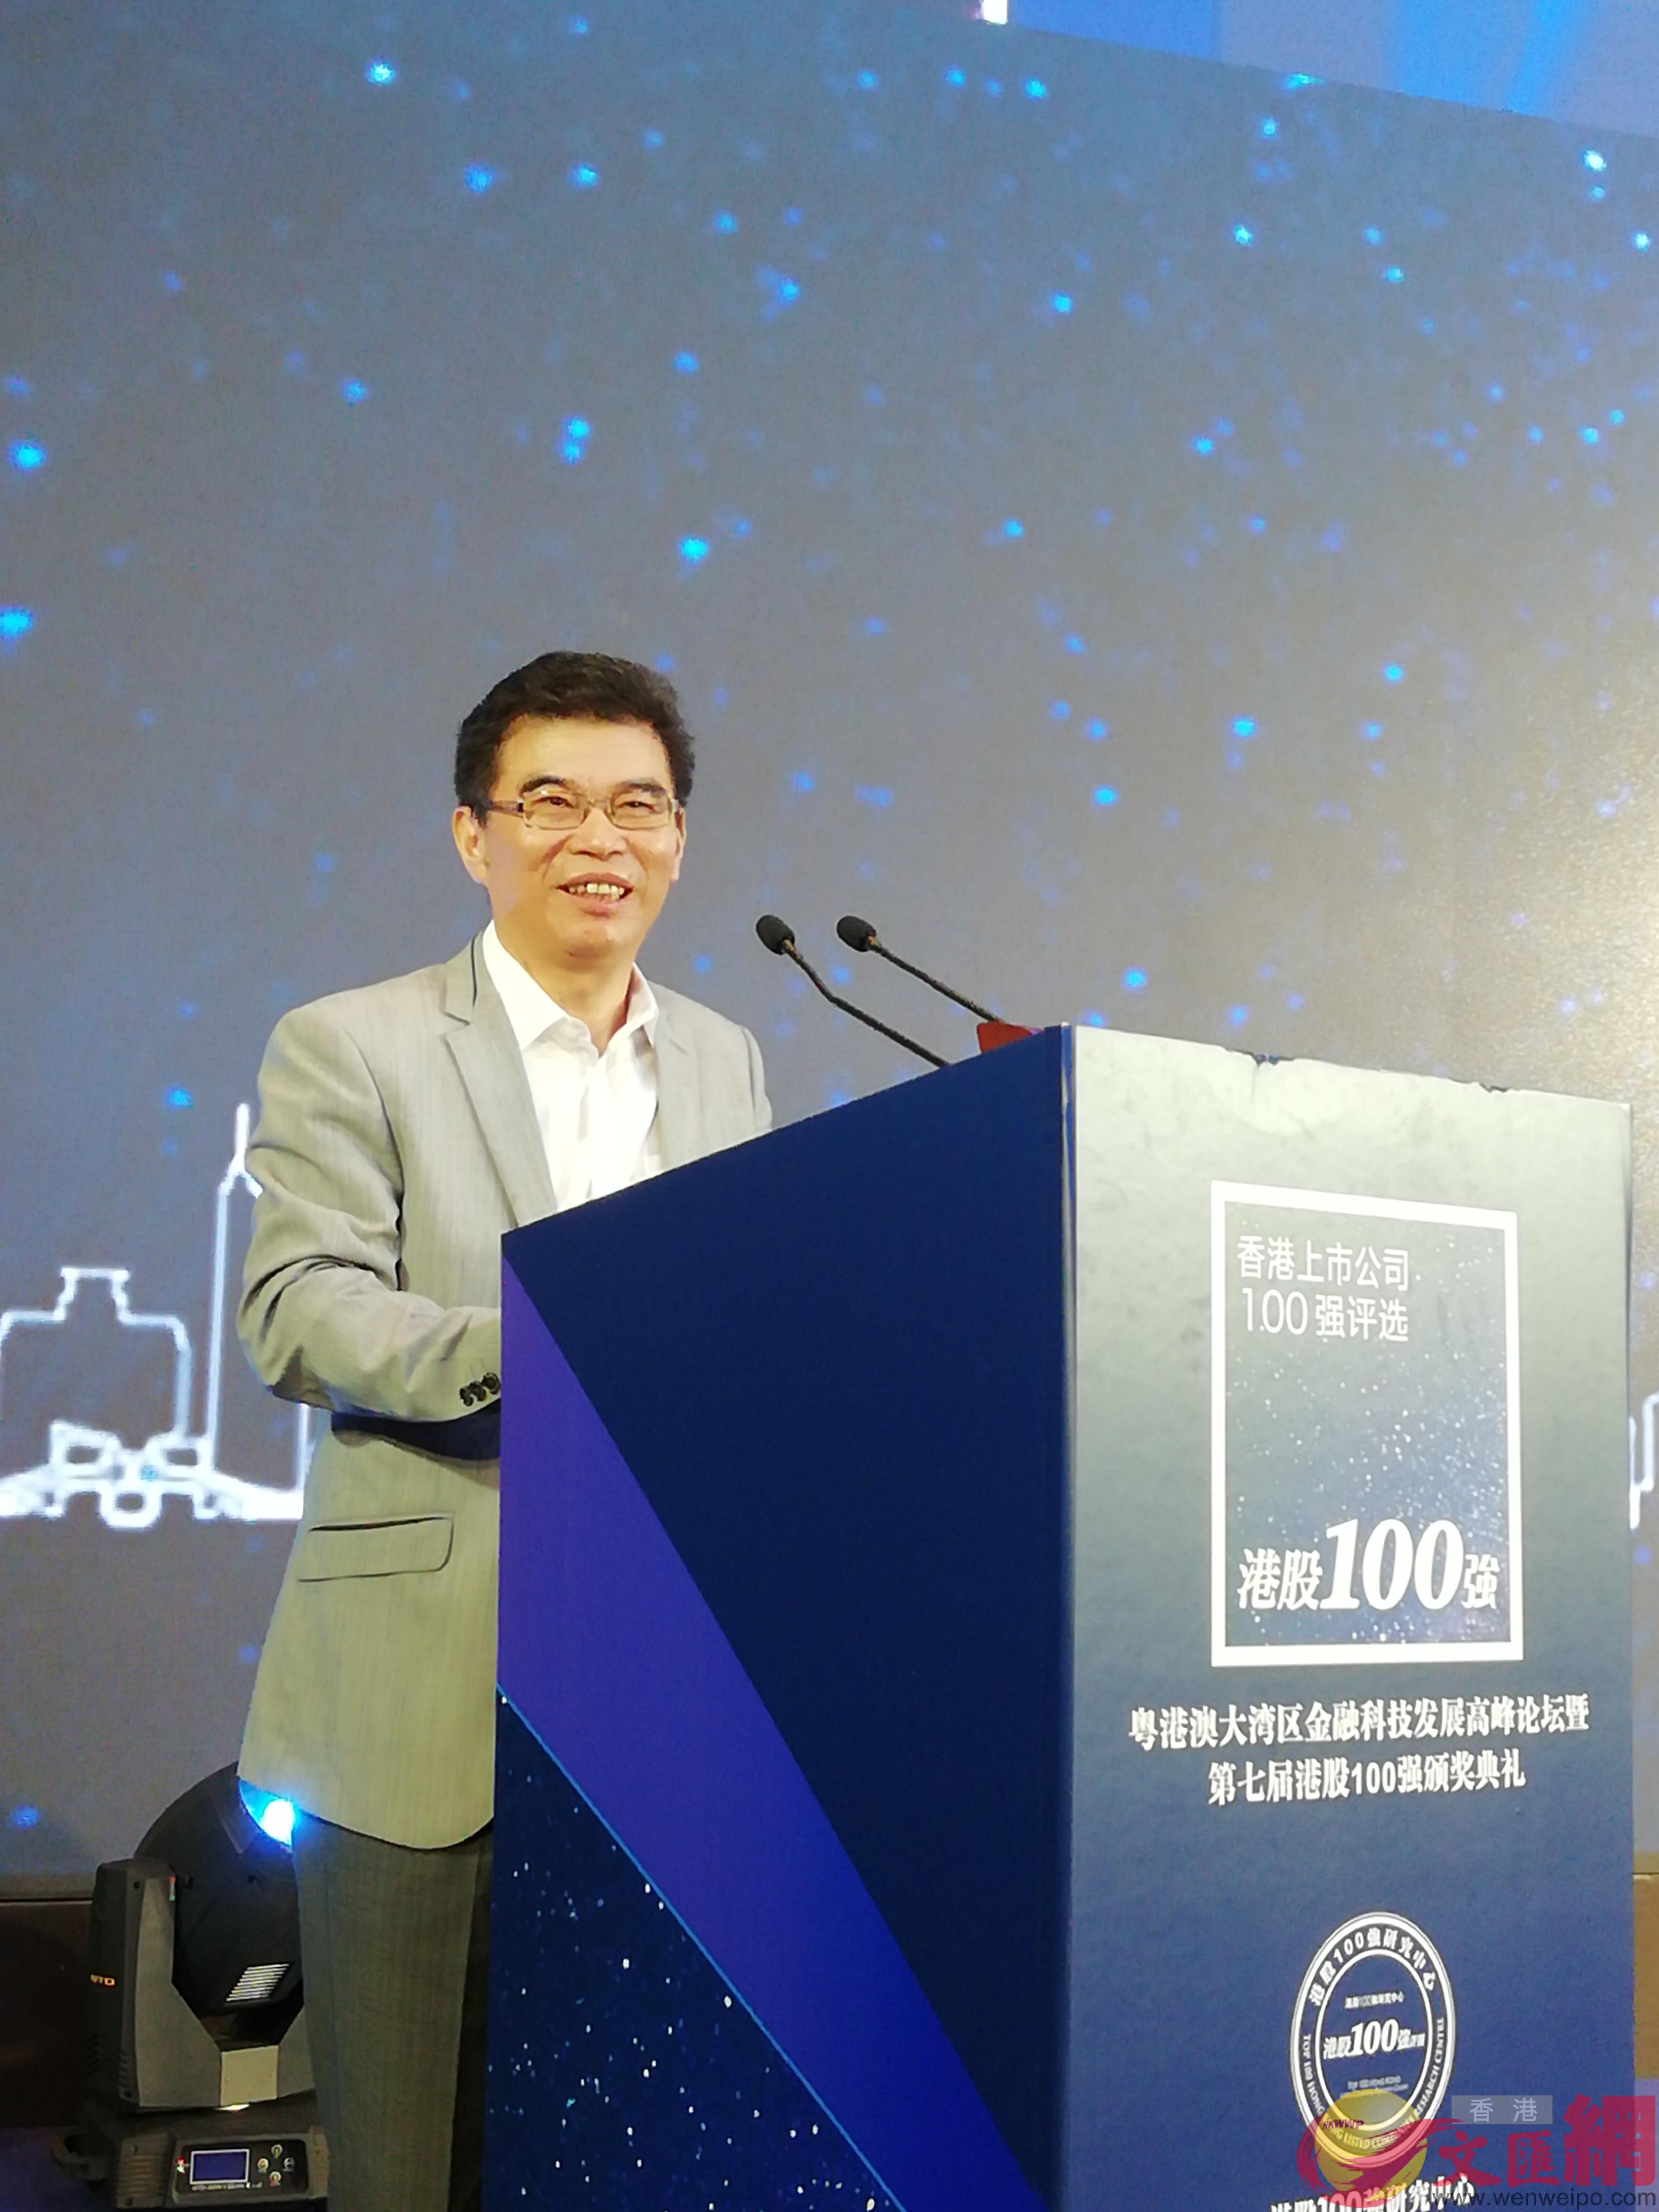  王理宗稱A中國企業發展需要耐心B恆心和專心A只有這樣才能做好企業 ]記者 李昌鴻 攝^